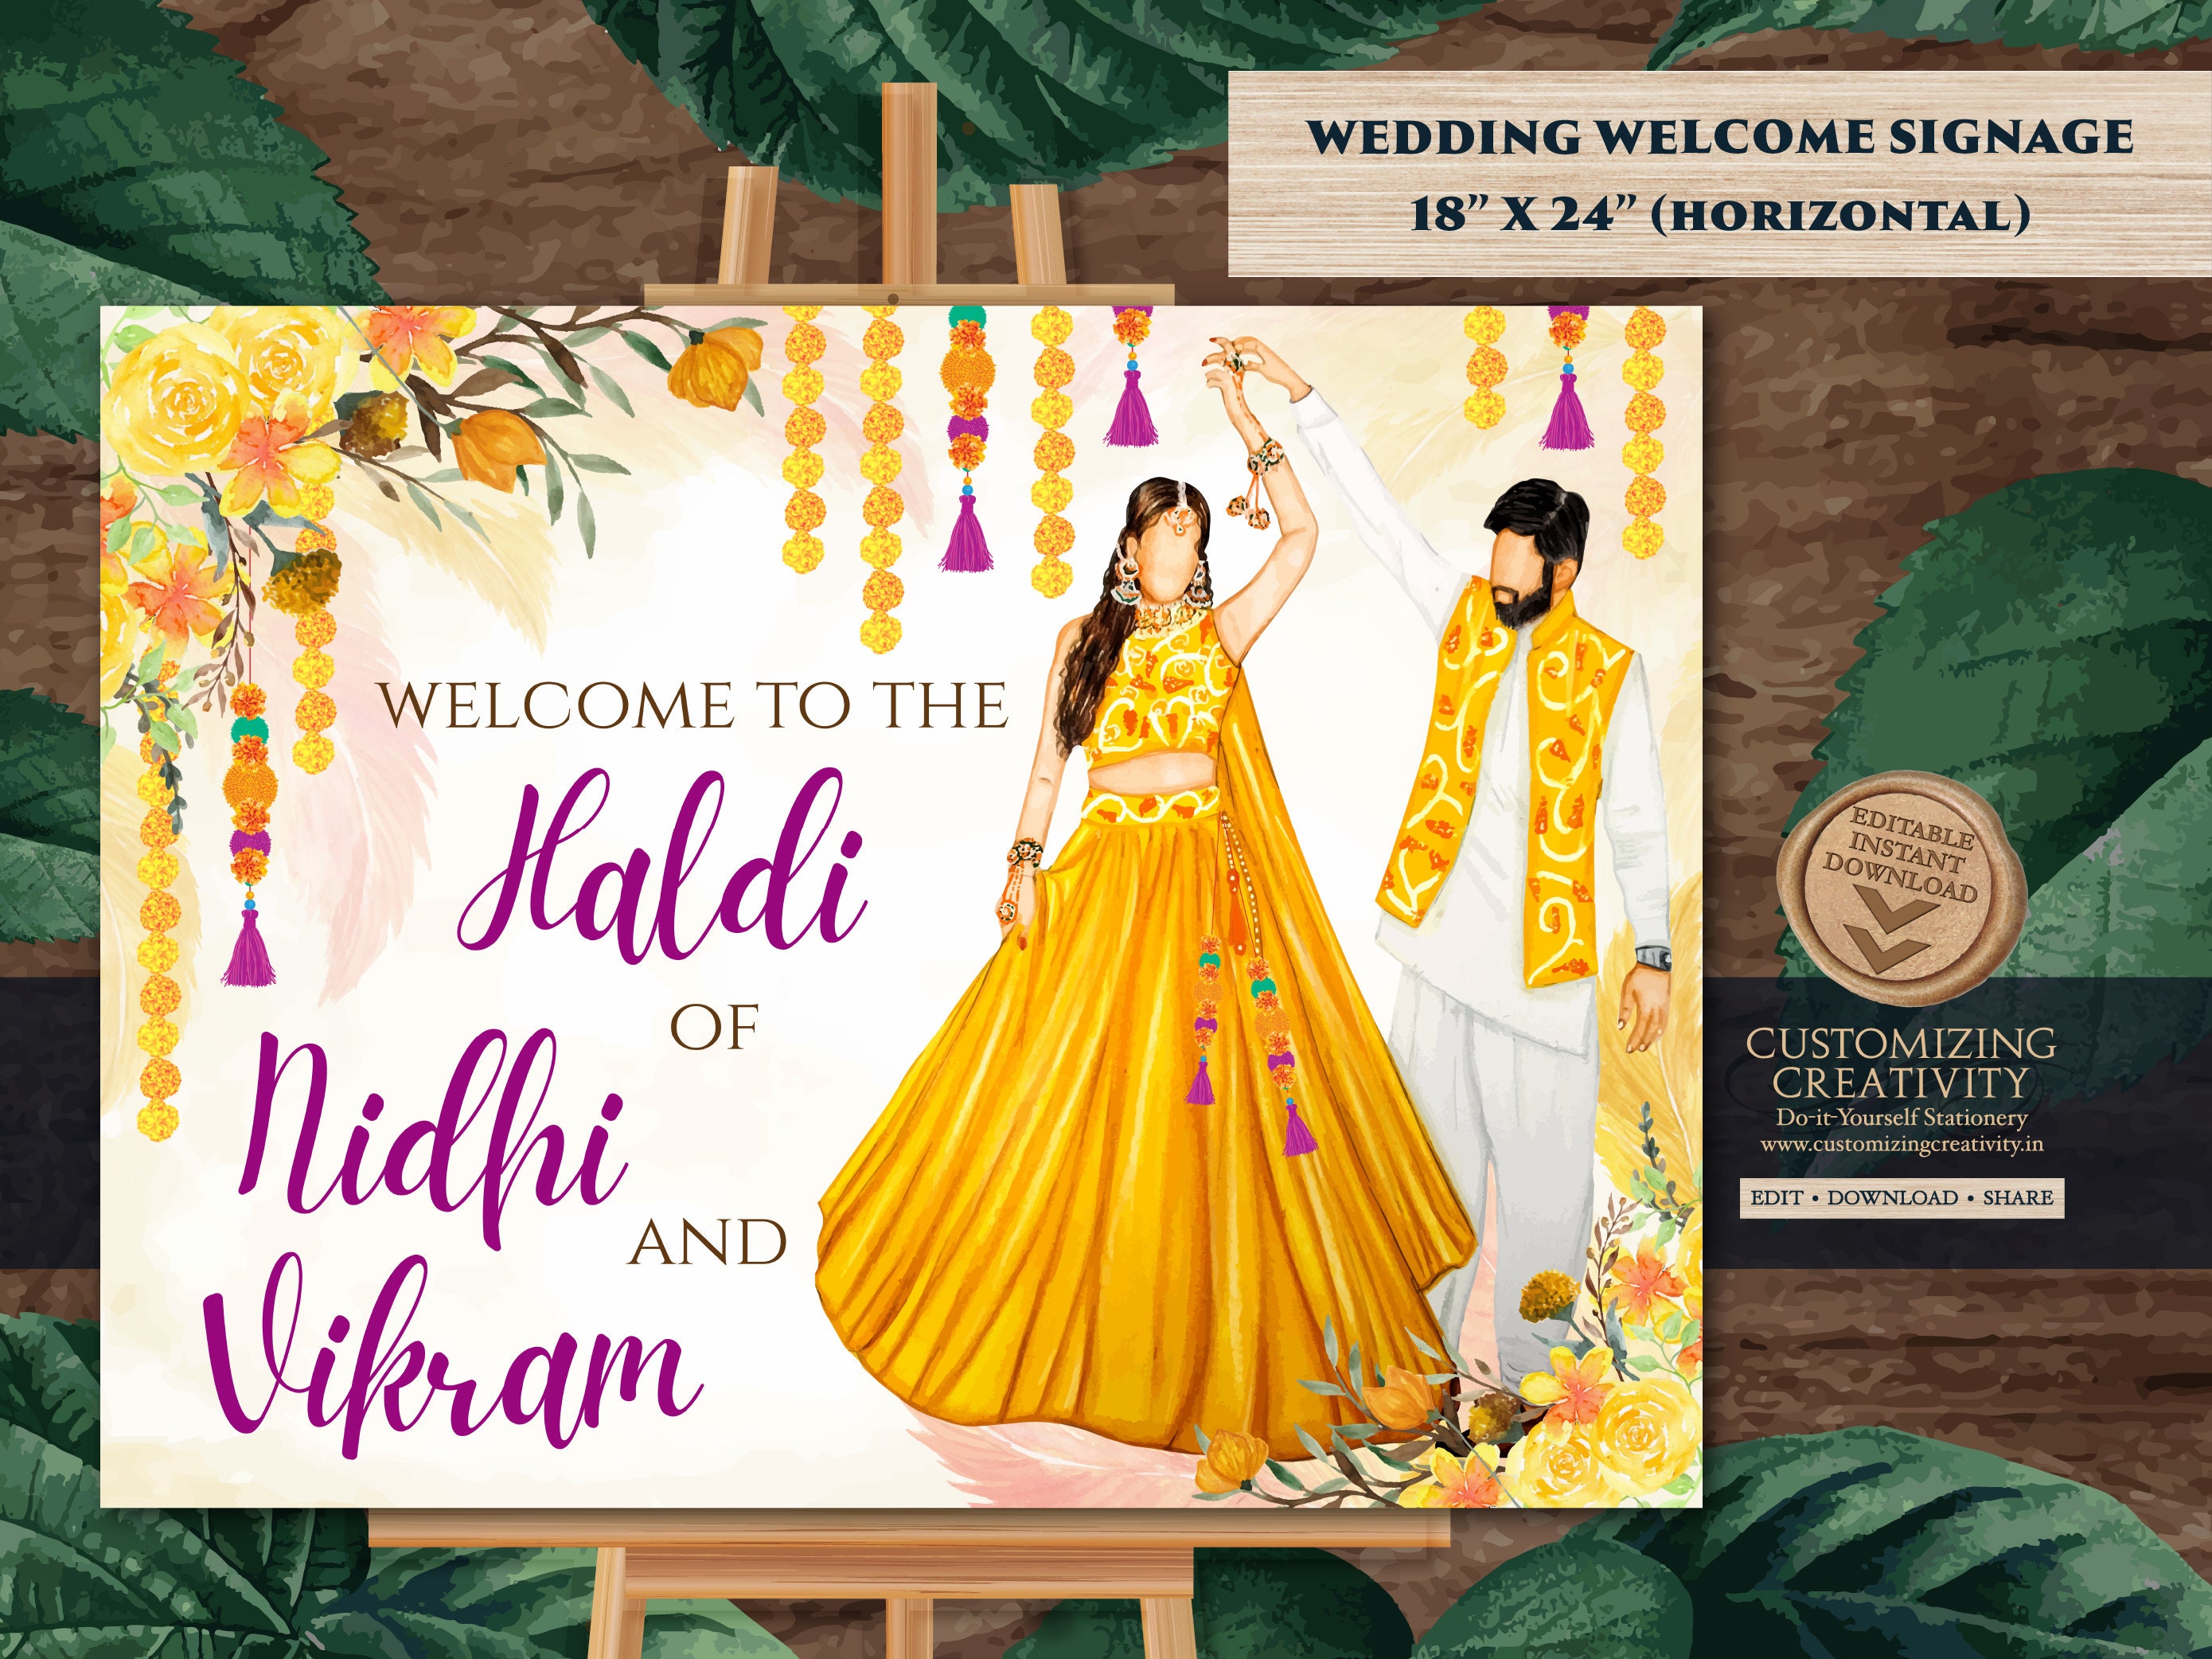 Bạn muốn đón tiếp khách mời của mình bằng một bảng chào mừng Haldi thật đặc biệt? Tại đây, chúng tôi có các dòng sản phẩm bảng hiệu đầy sáng tạo và ấn tượng. Hãy để chúng tôi giúp bạn tạo nên một món quà đặc biệt cho người thân của mình.